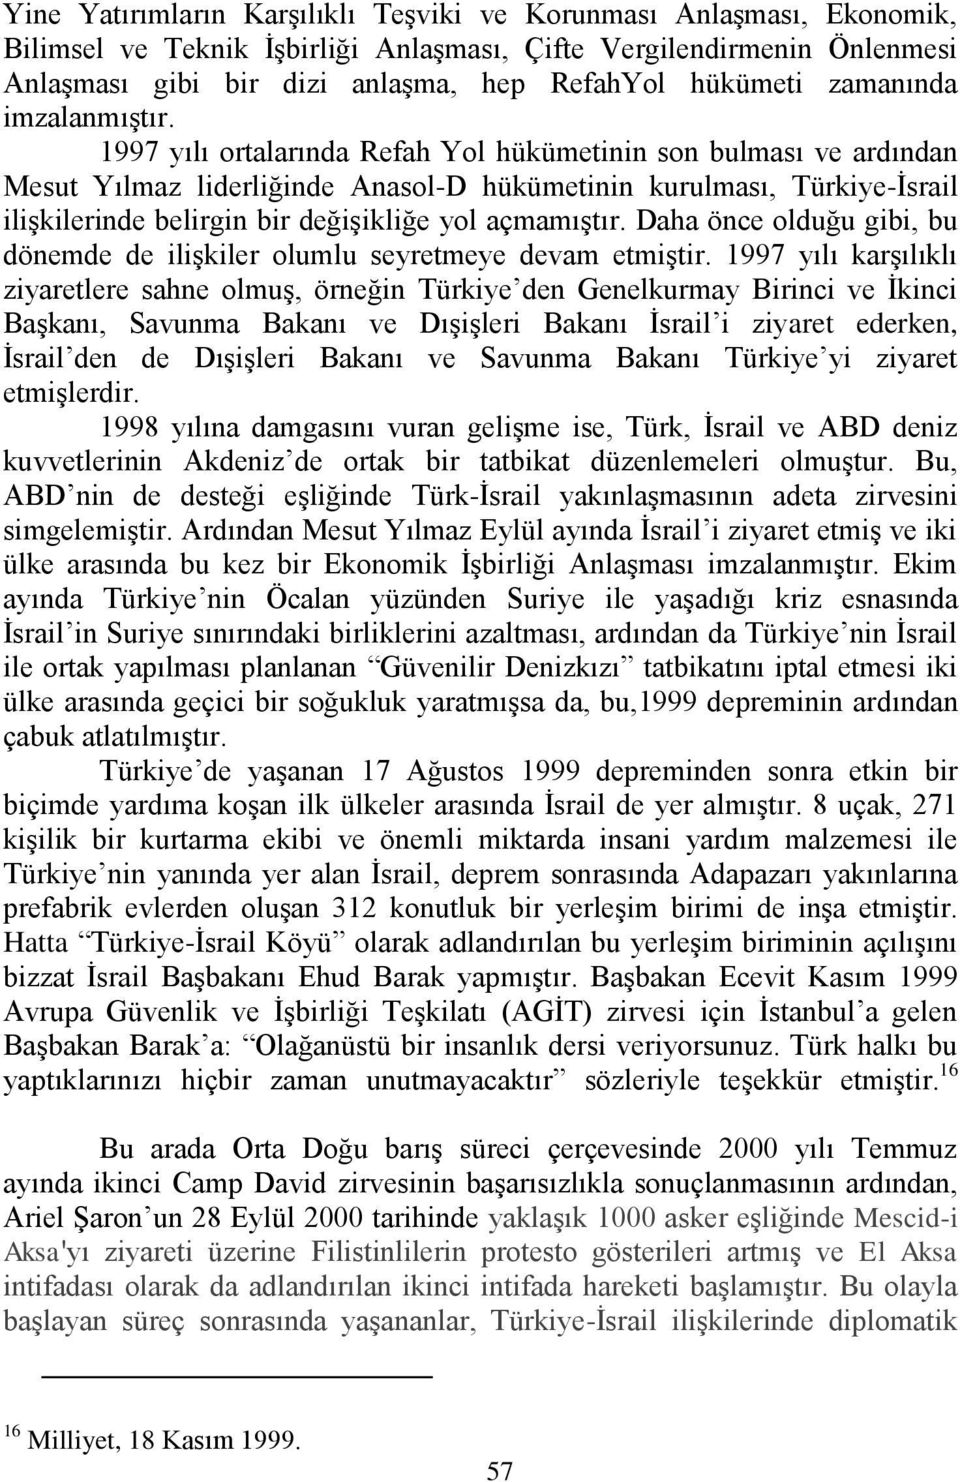 1997 yılı ortalarında Refah Yol hükümetinin son bulması ve ardından Mesut Yılmaz liderliğinde Anasol-D hükümetinin kurulması, Türkiye-Ġsrail iliģkilerinde belirgin bir değiģikliğe yol açmamıģtır.